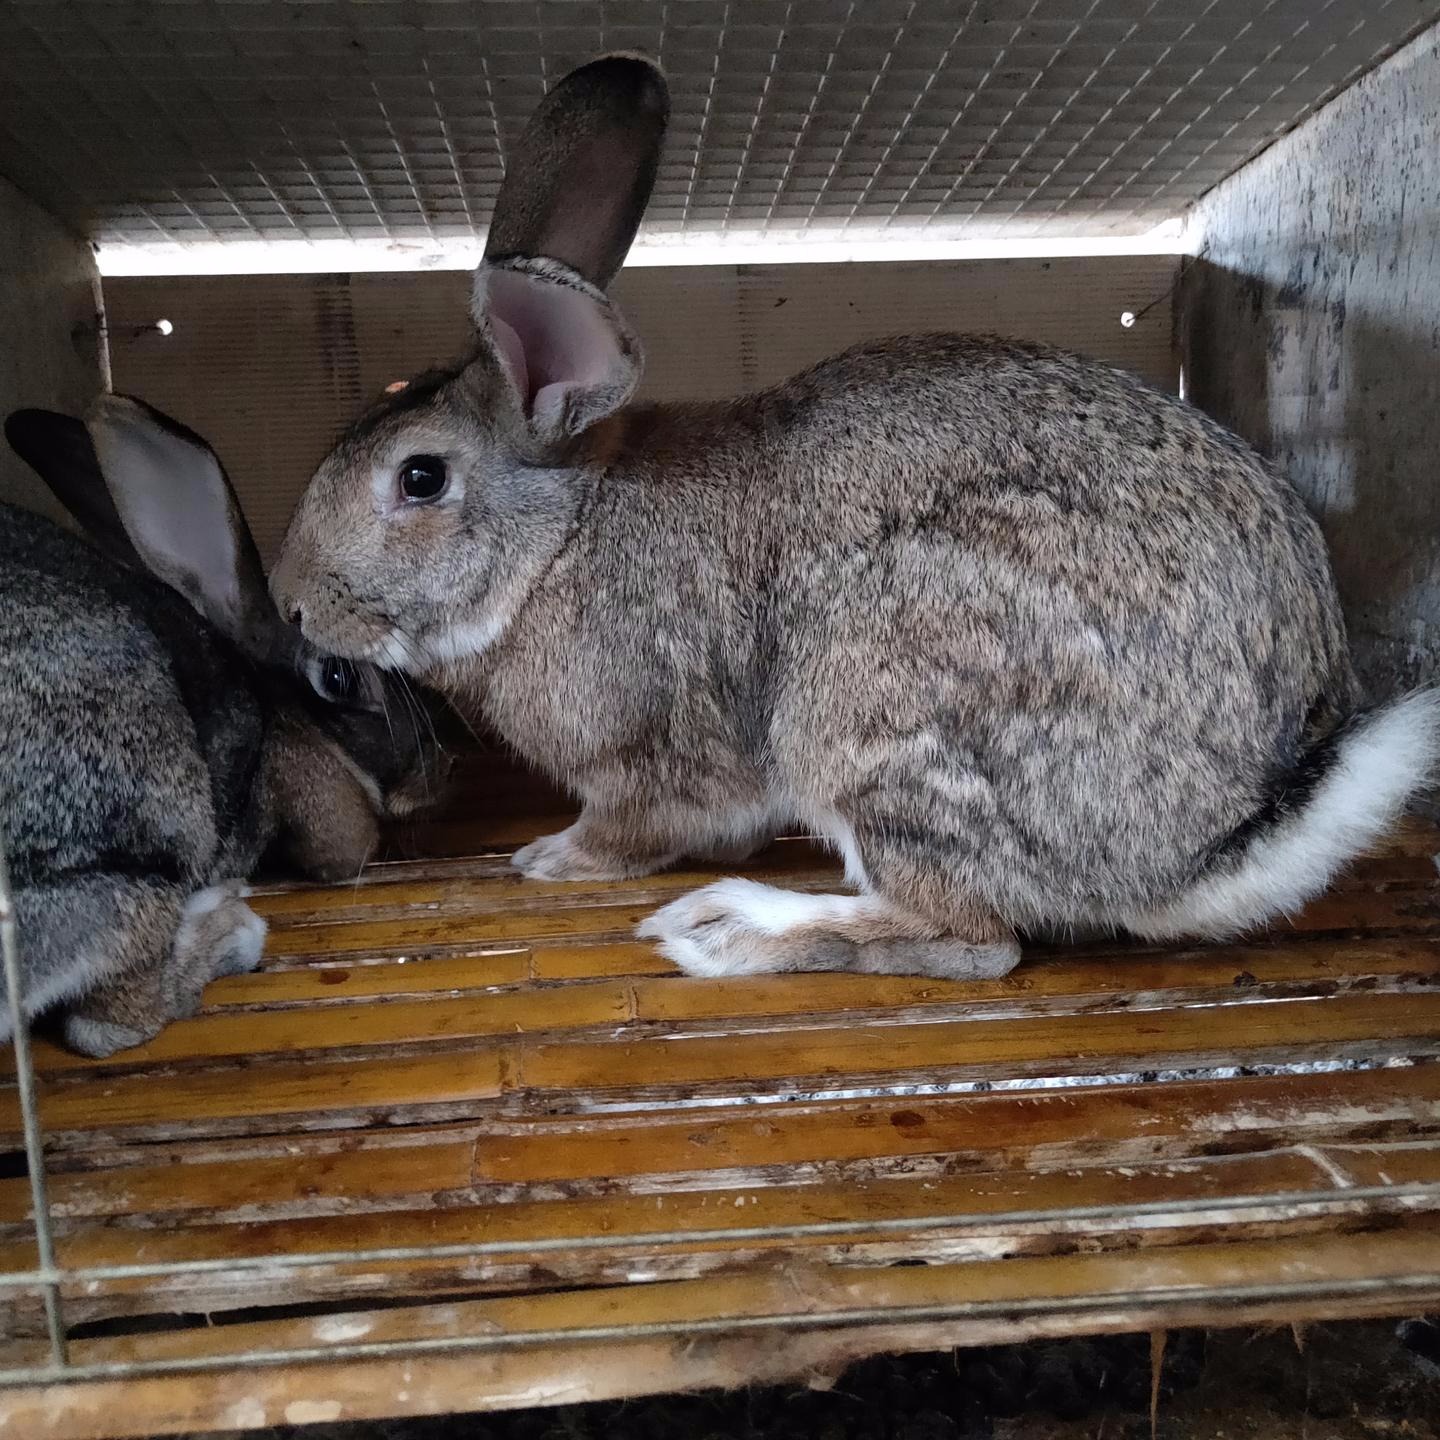 比利时养殖 杂交野兔养殖 甩卖KYHkJkljKHK 长毛兔养殖 肉兔种兔养殖 包回收3